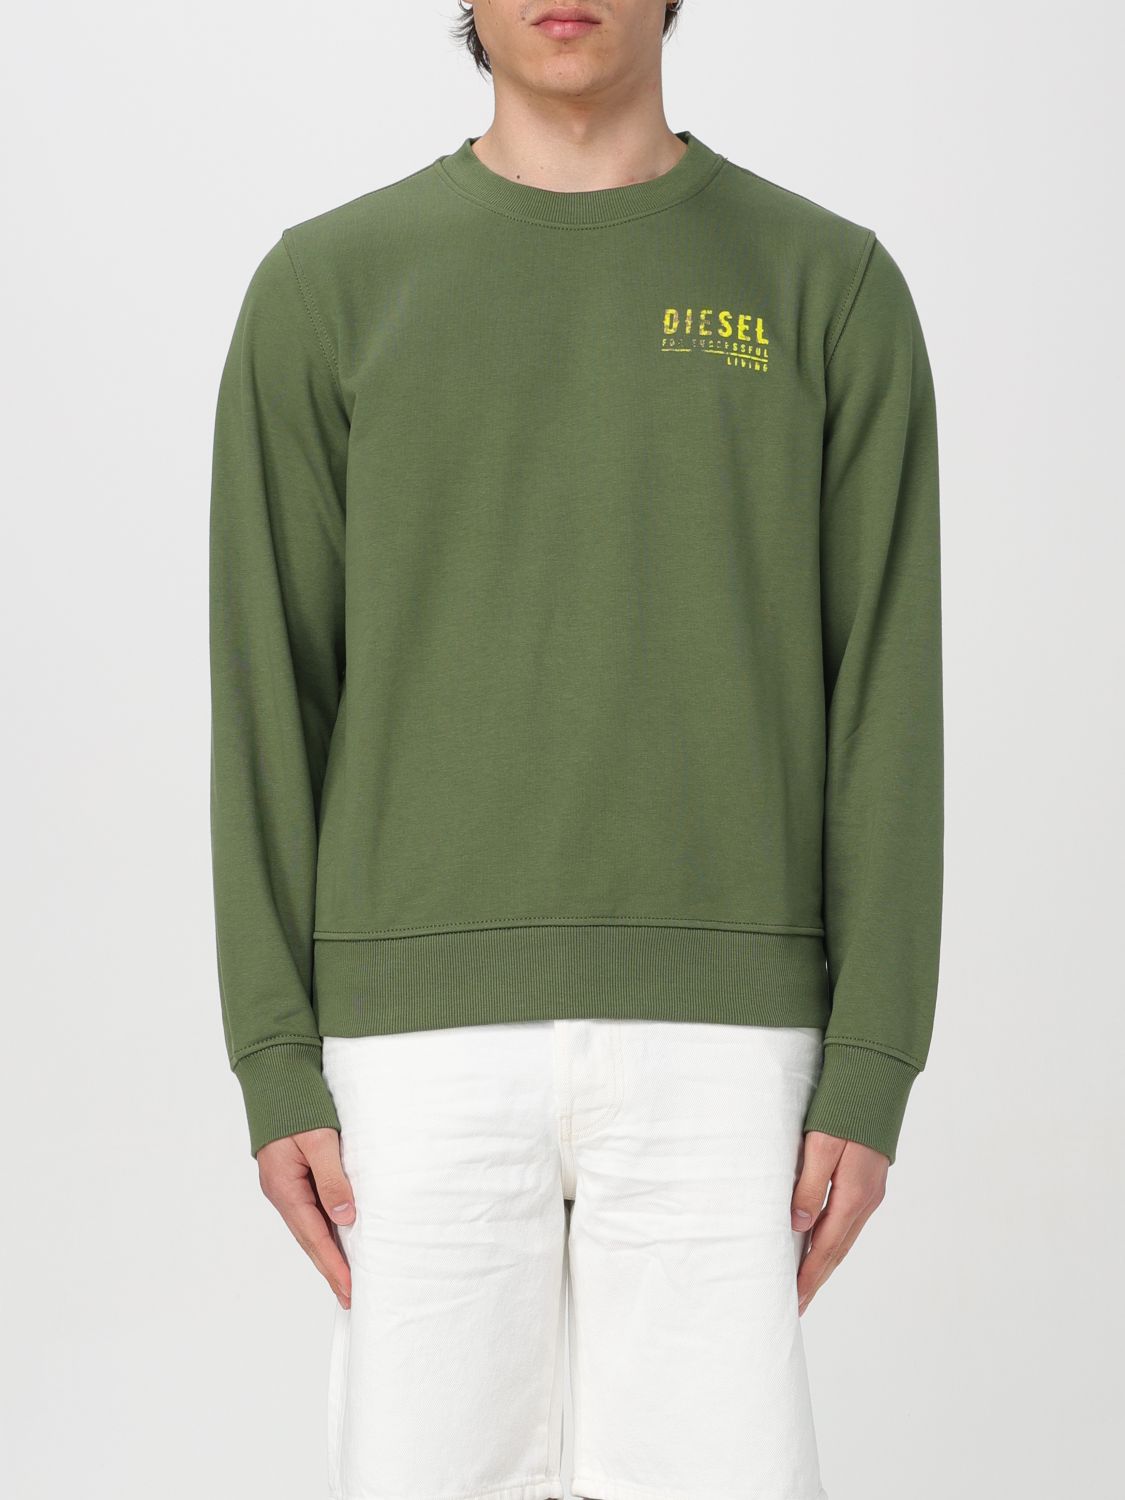 Diesel Sweatshirt DIESEL Men colour Green